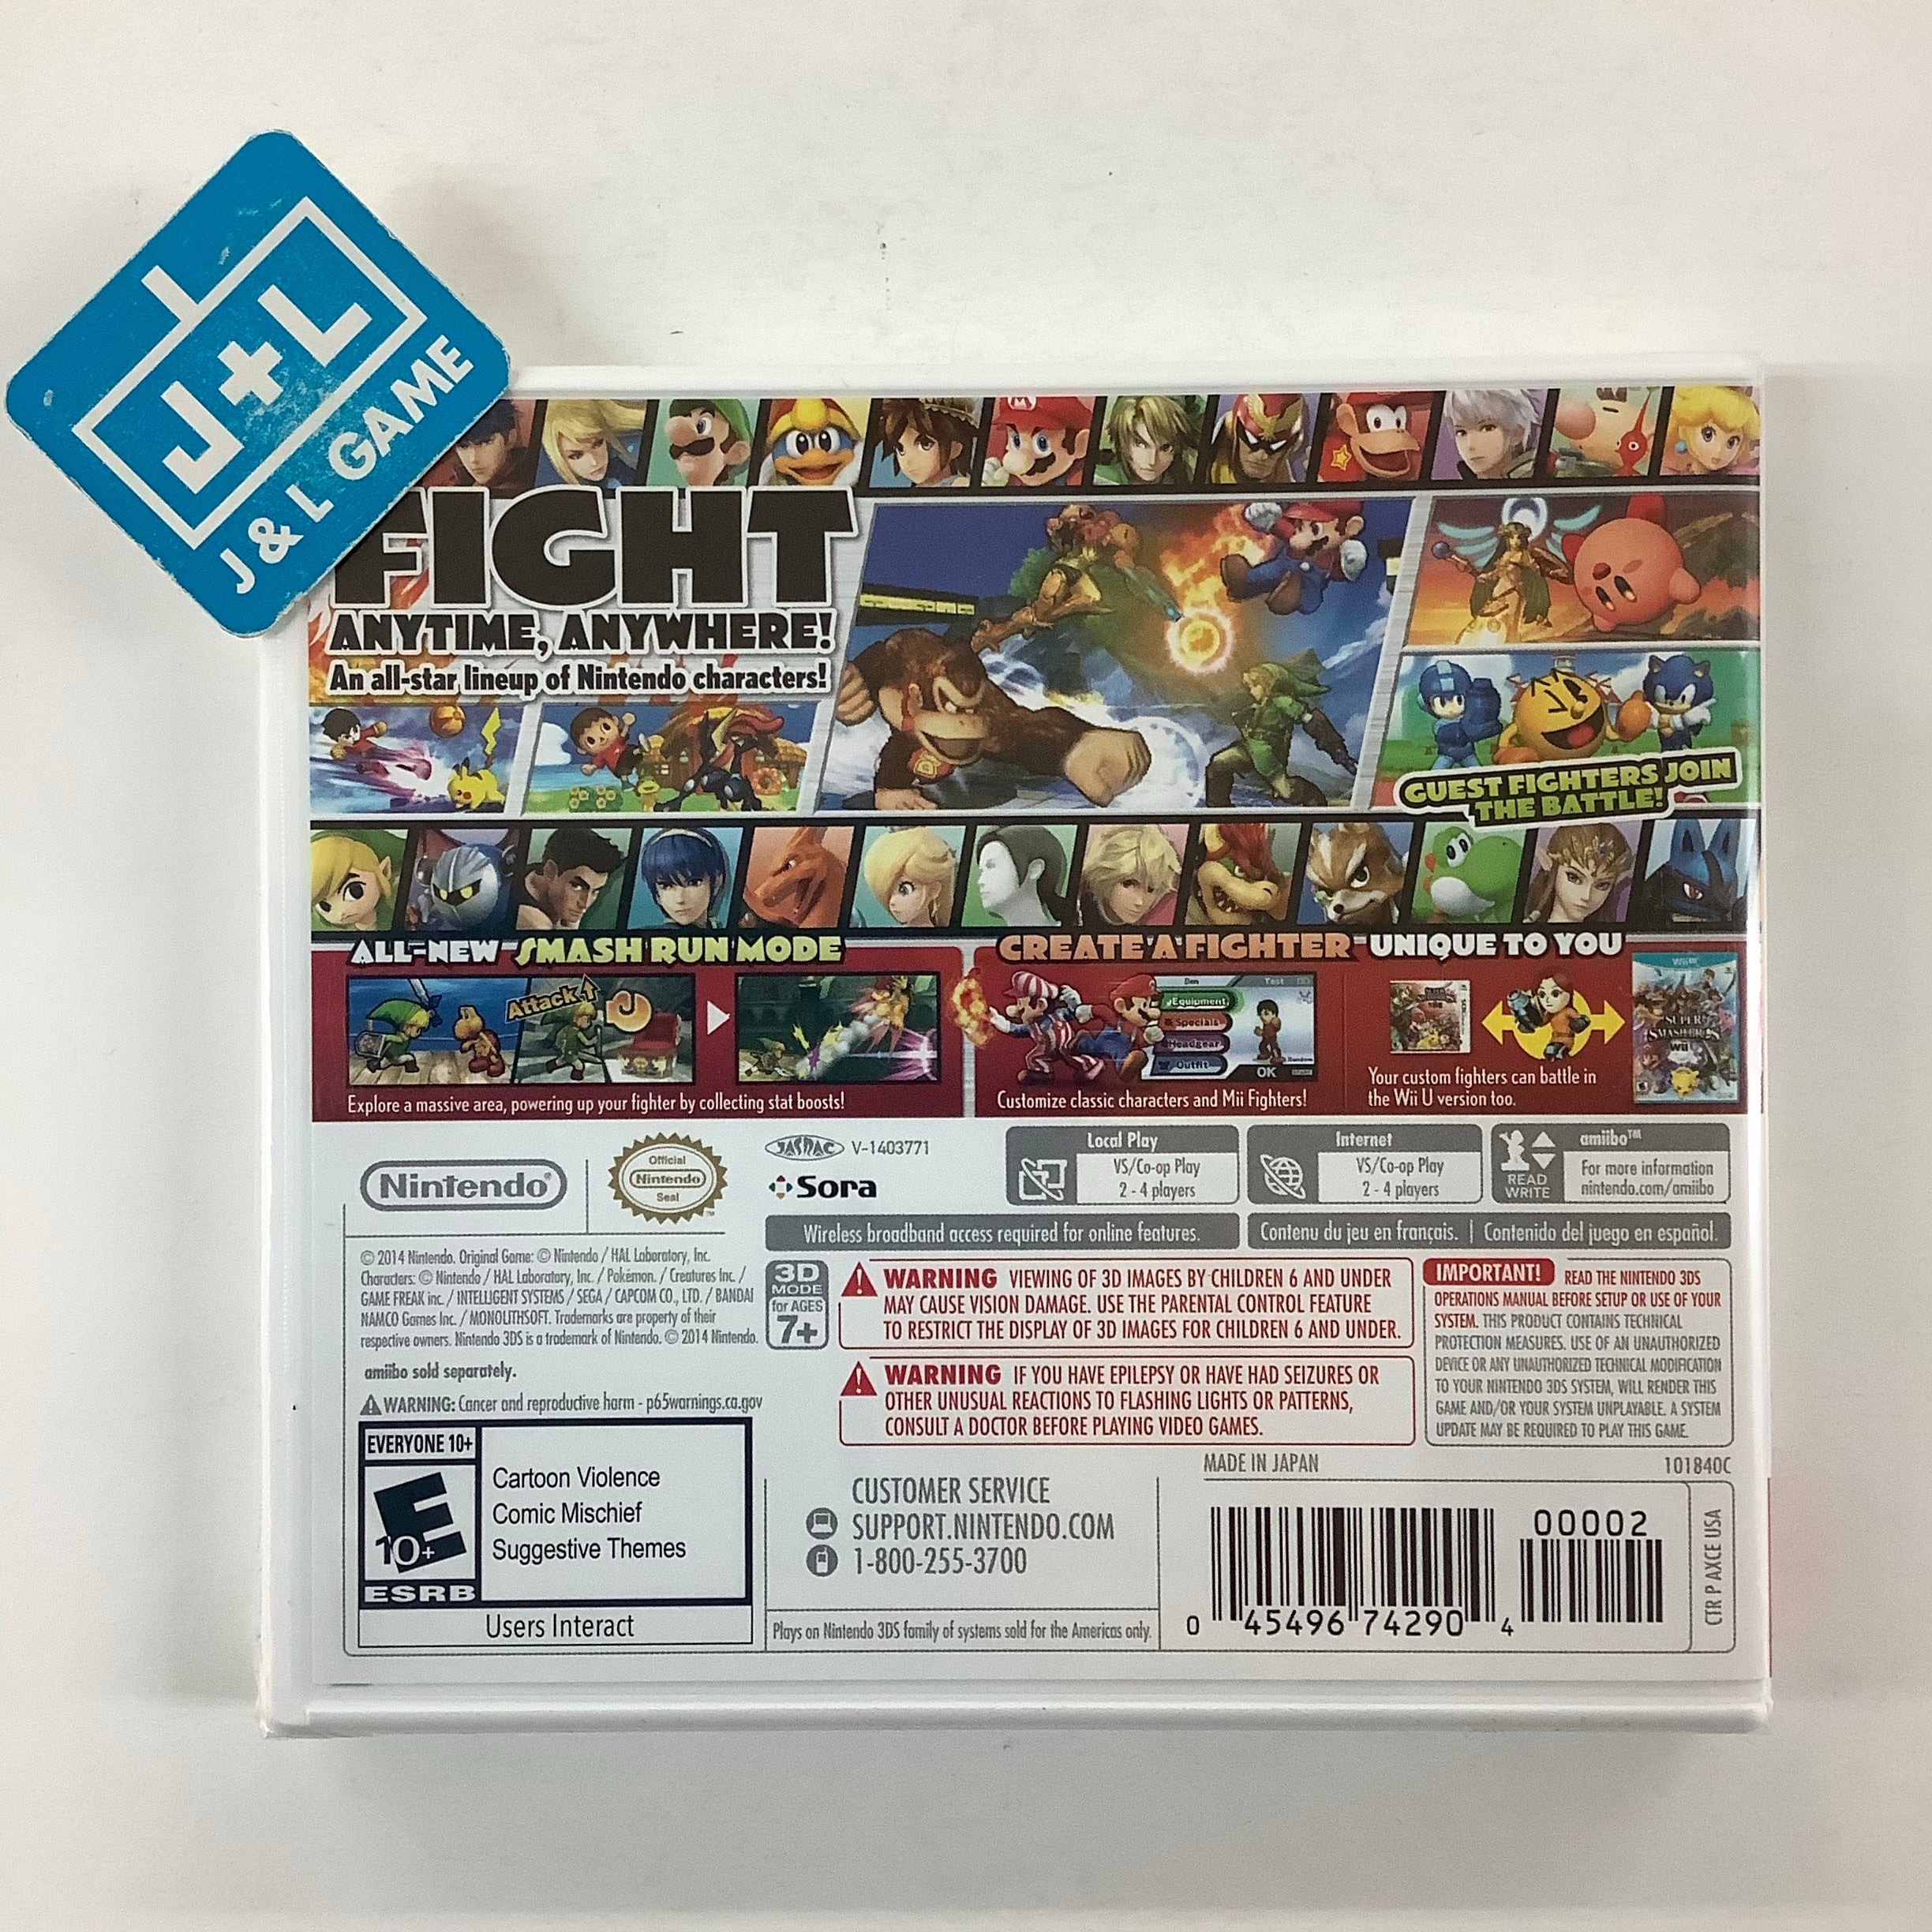 Super Smash Bros. for Nintendo 3DS - Nintendo 3DS Video Games Nintendo   